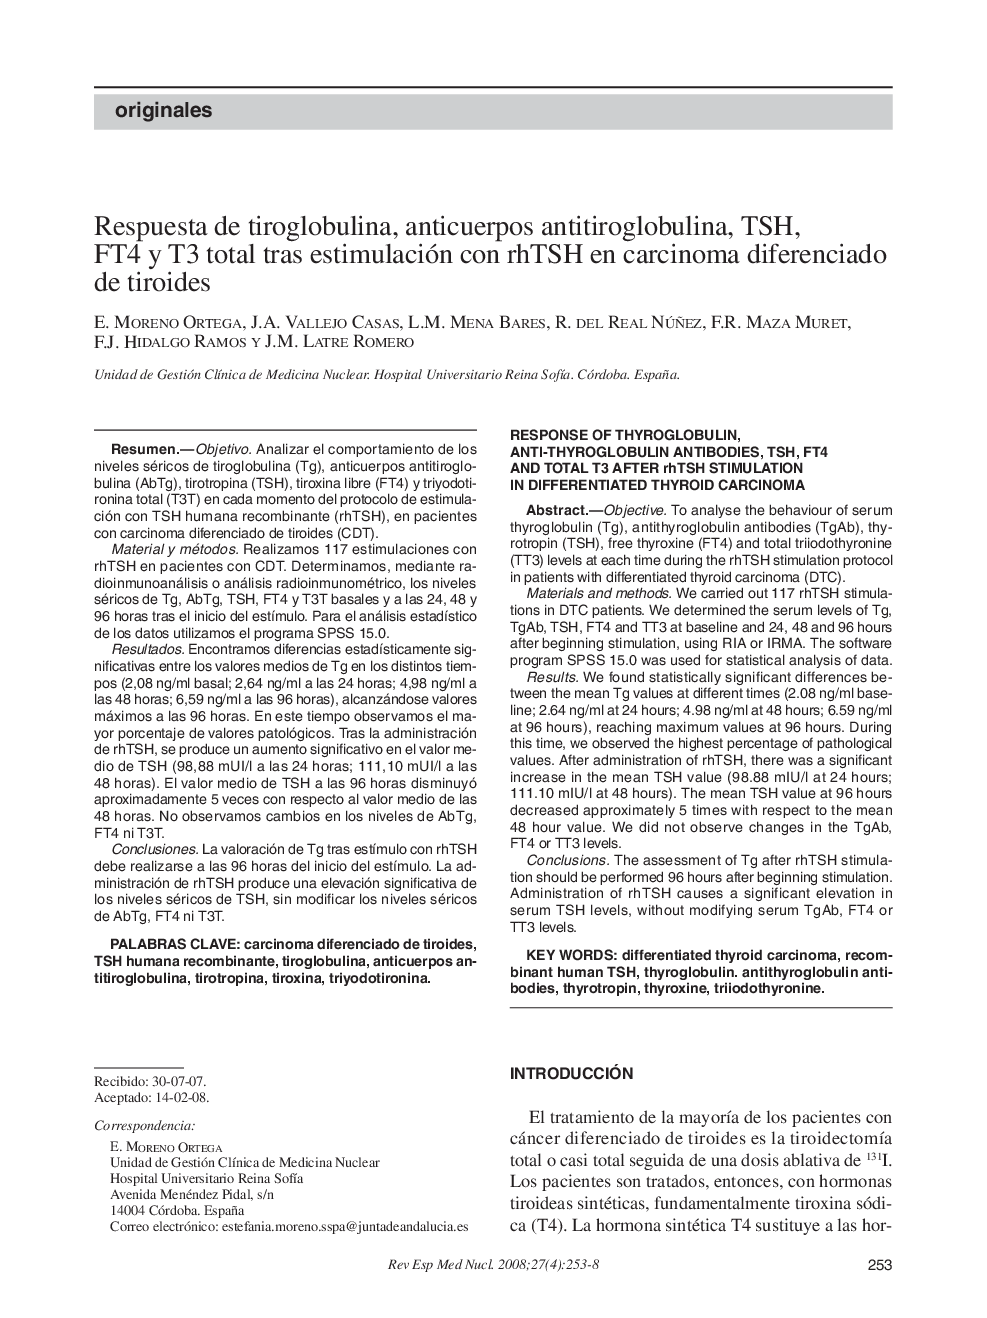 Respuesta de tiroglobulina, anticuerpos antitiroglobulina, TSH, FT4 y T3 total tras estimulación con rhTSH en carcinoma diferenciado de tiroides